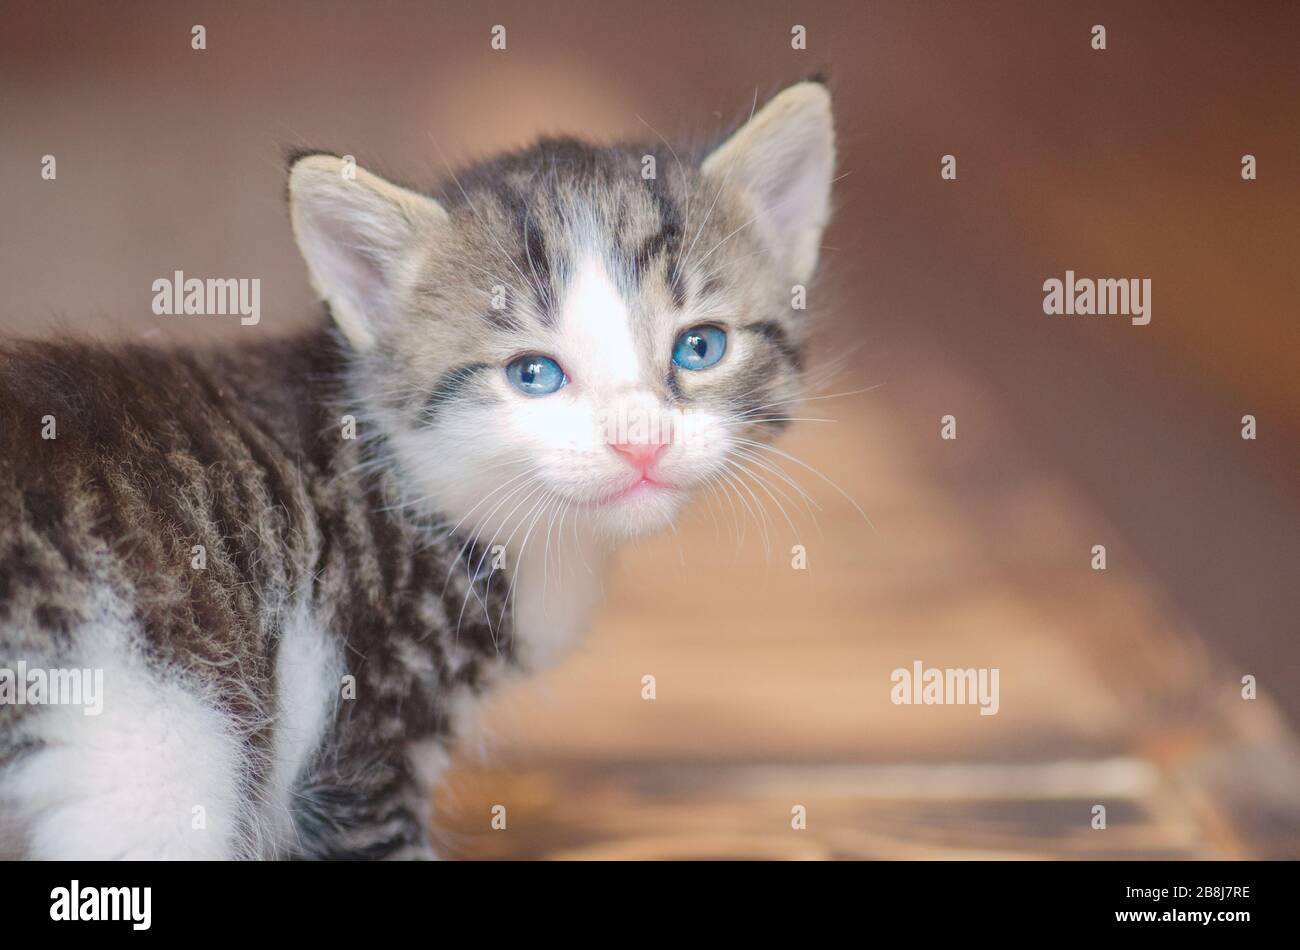 Gattini Divertenti Immagini E Fotos Stock Alamy